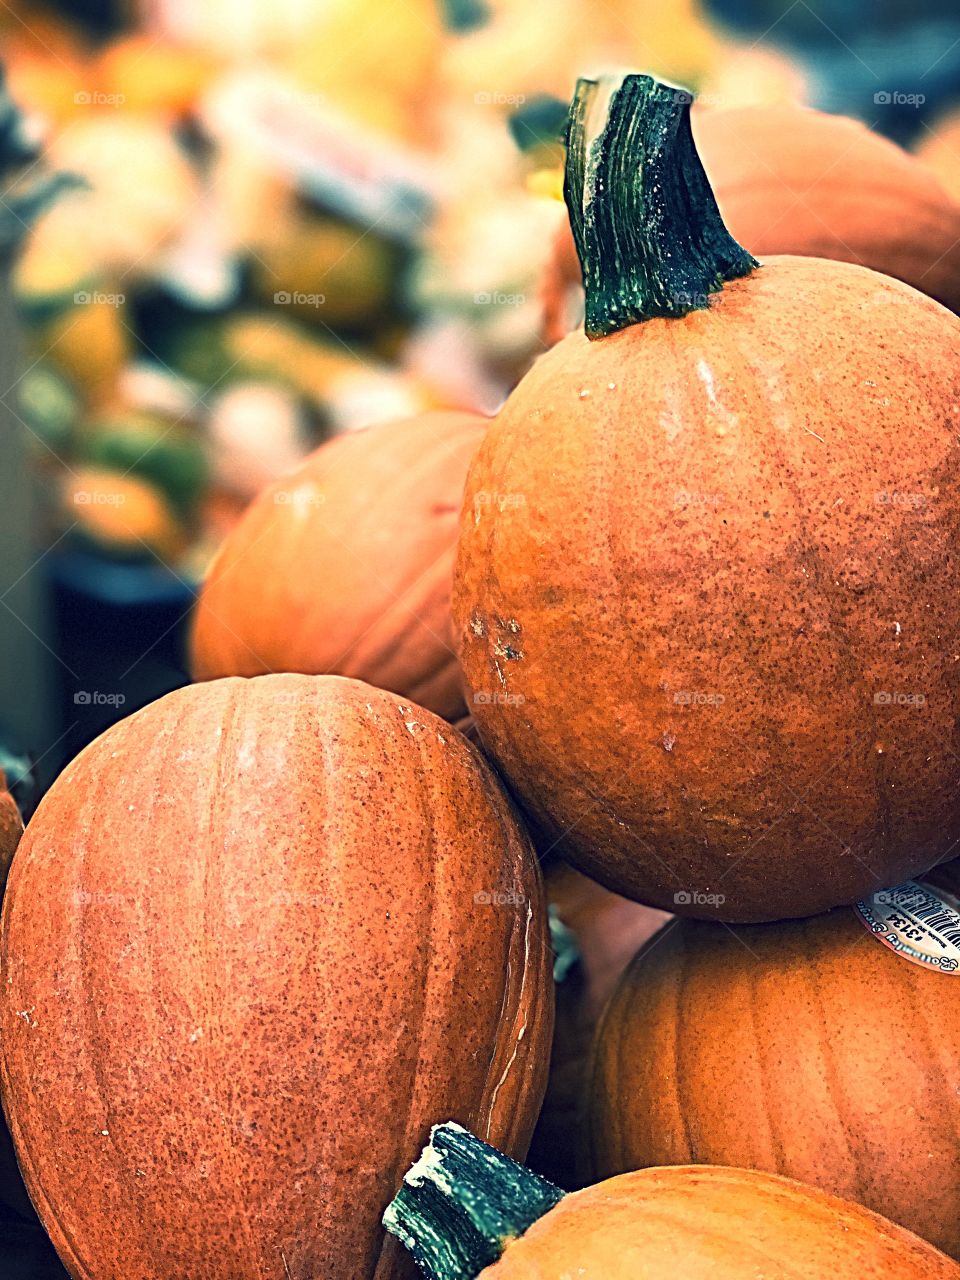 #Pumpkin  #halloween #orange #spice